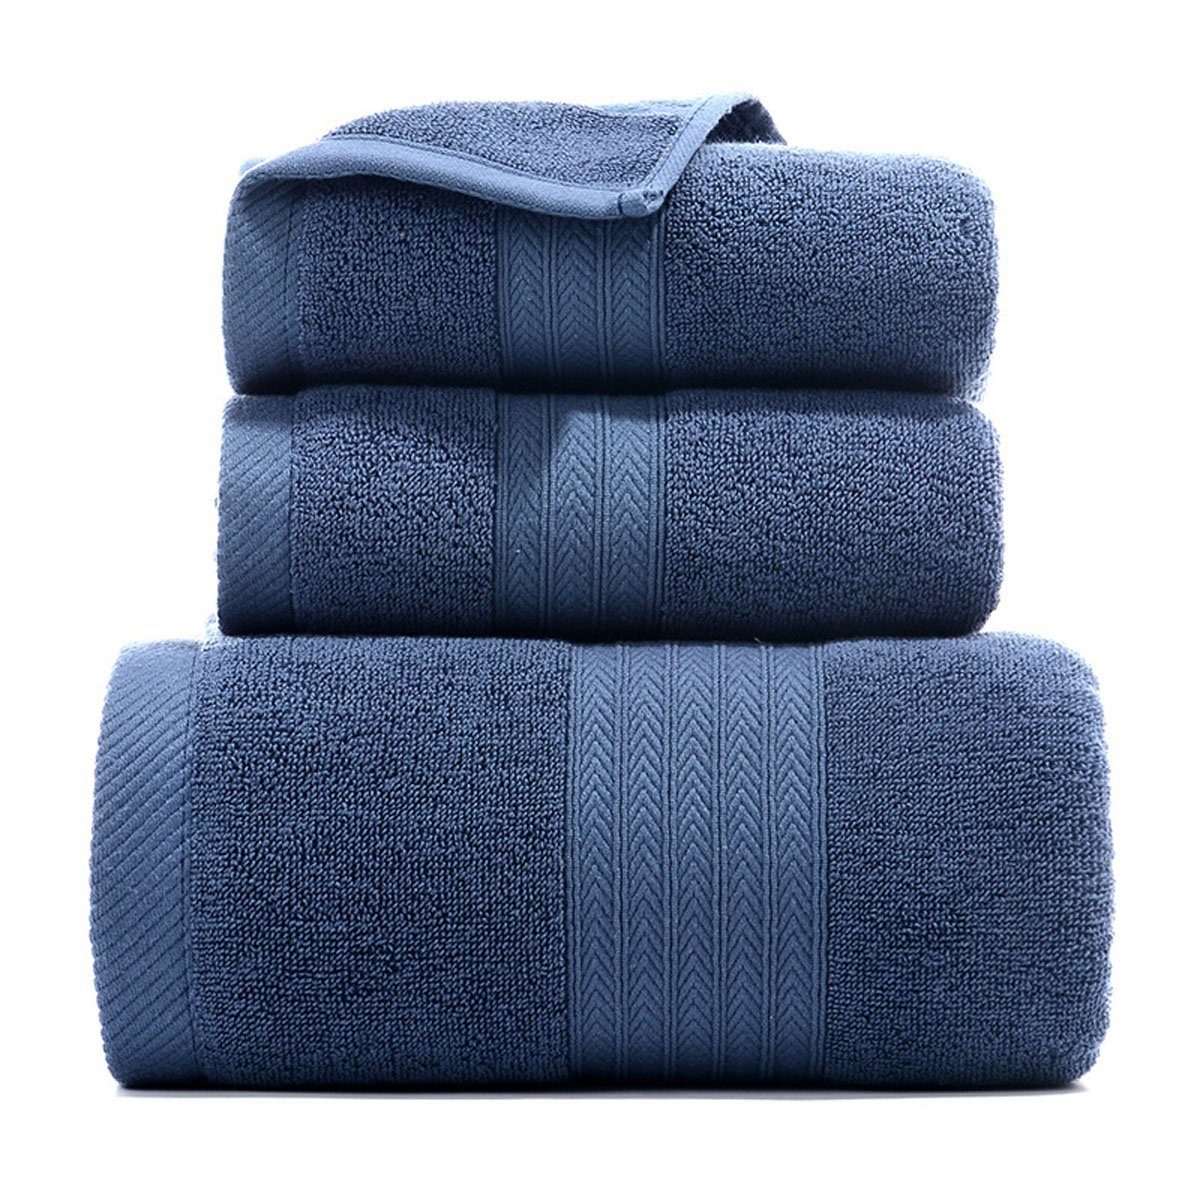 Hause Jormftte weich,für Handtuch zu und Set-2xHandtuch,1xBadetuch,saugfähig Blau Set Handtücher